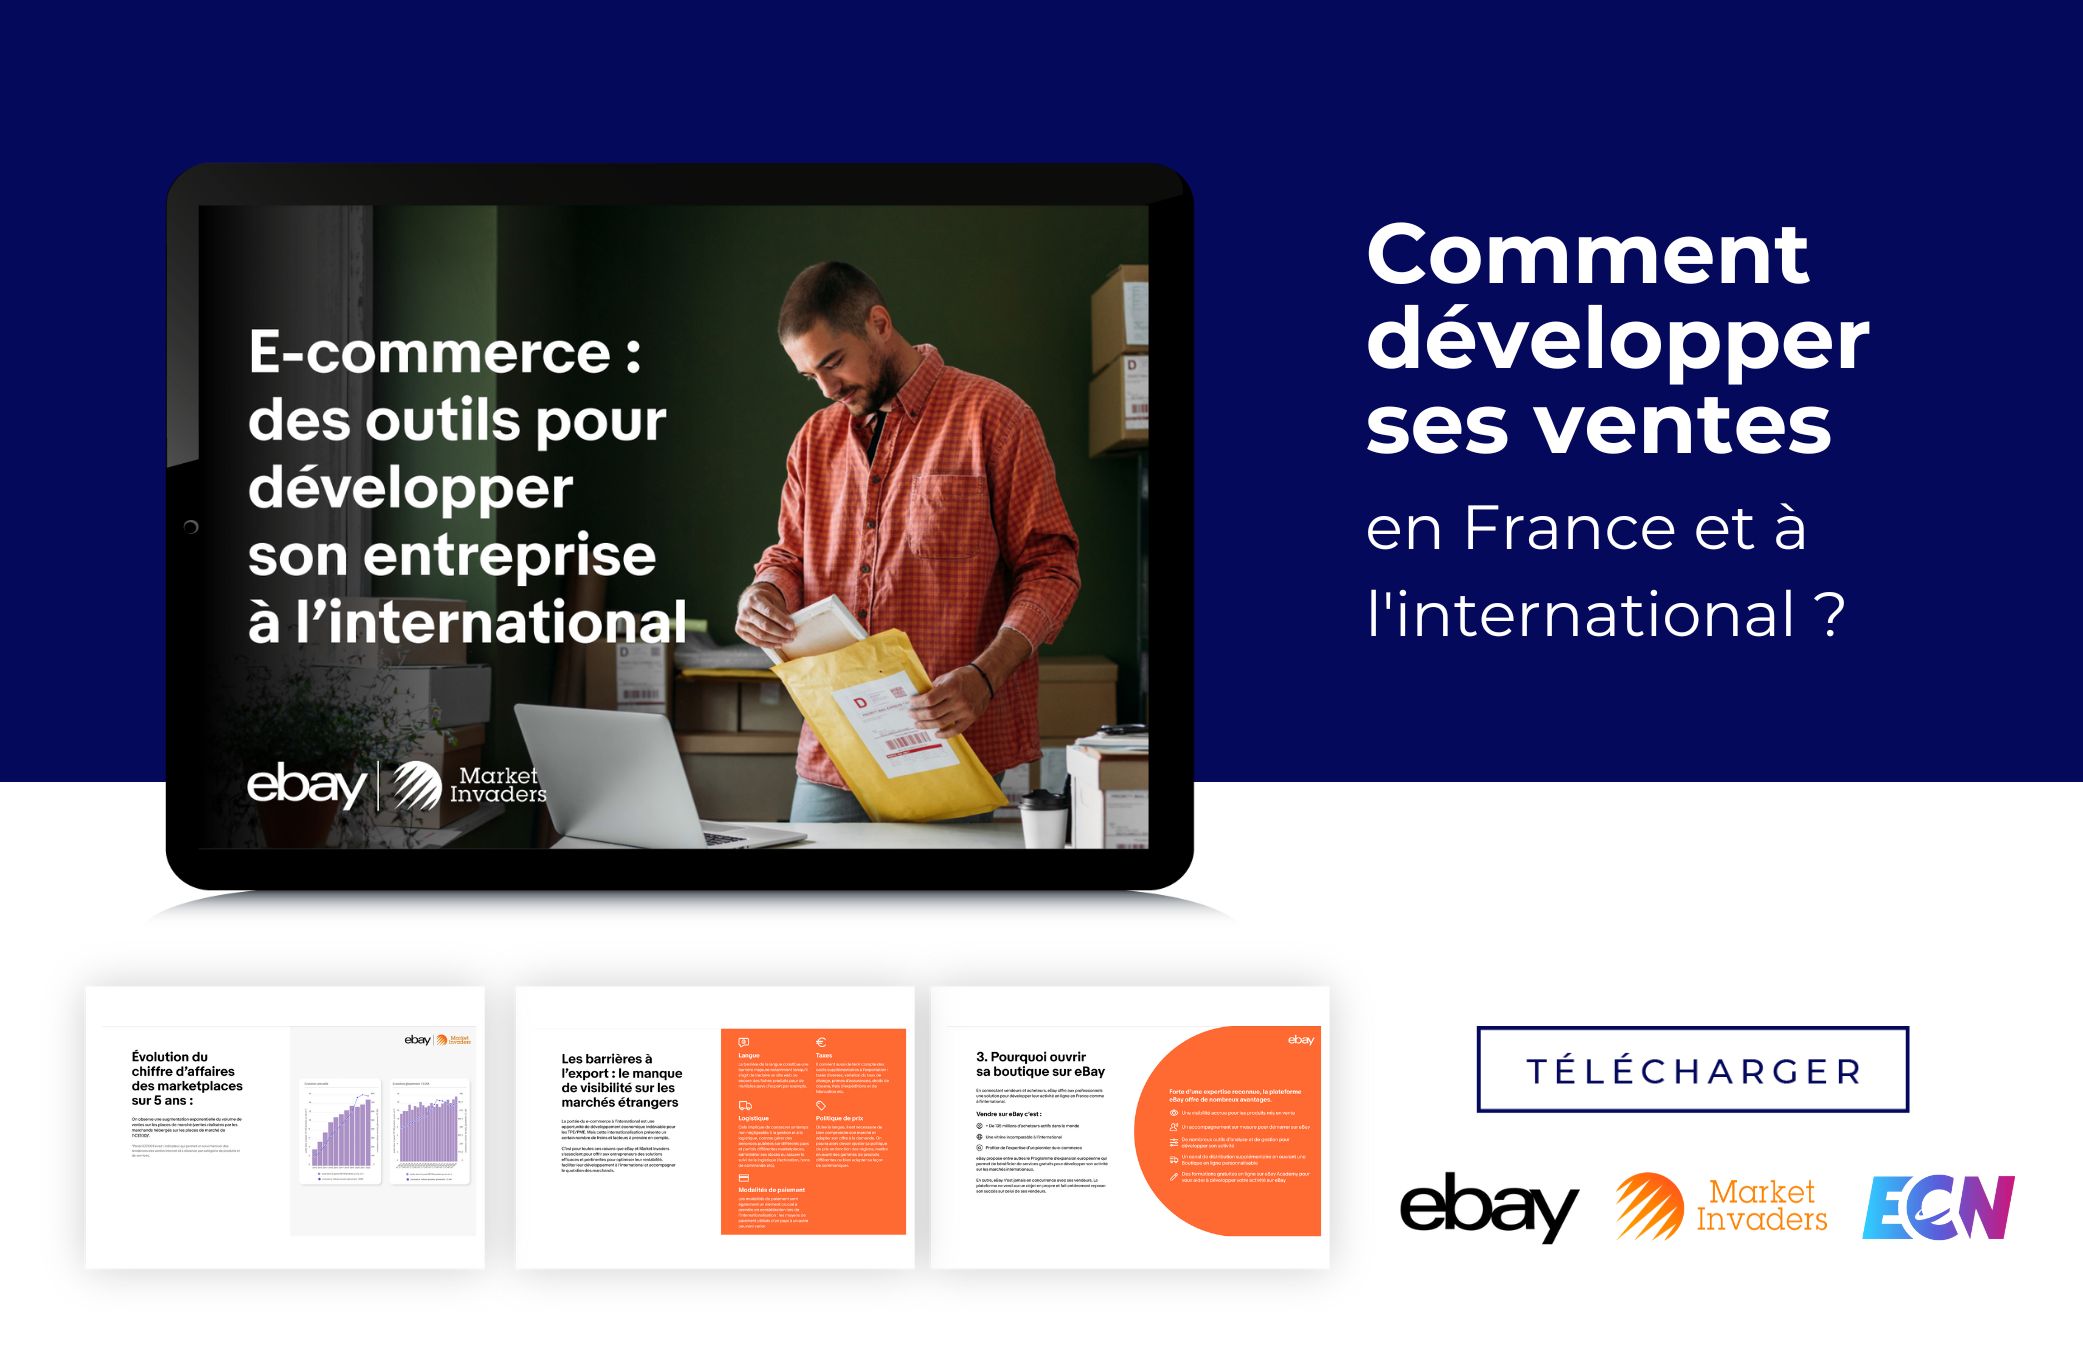 header ebook ebay market invaders developper ses ventes france international